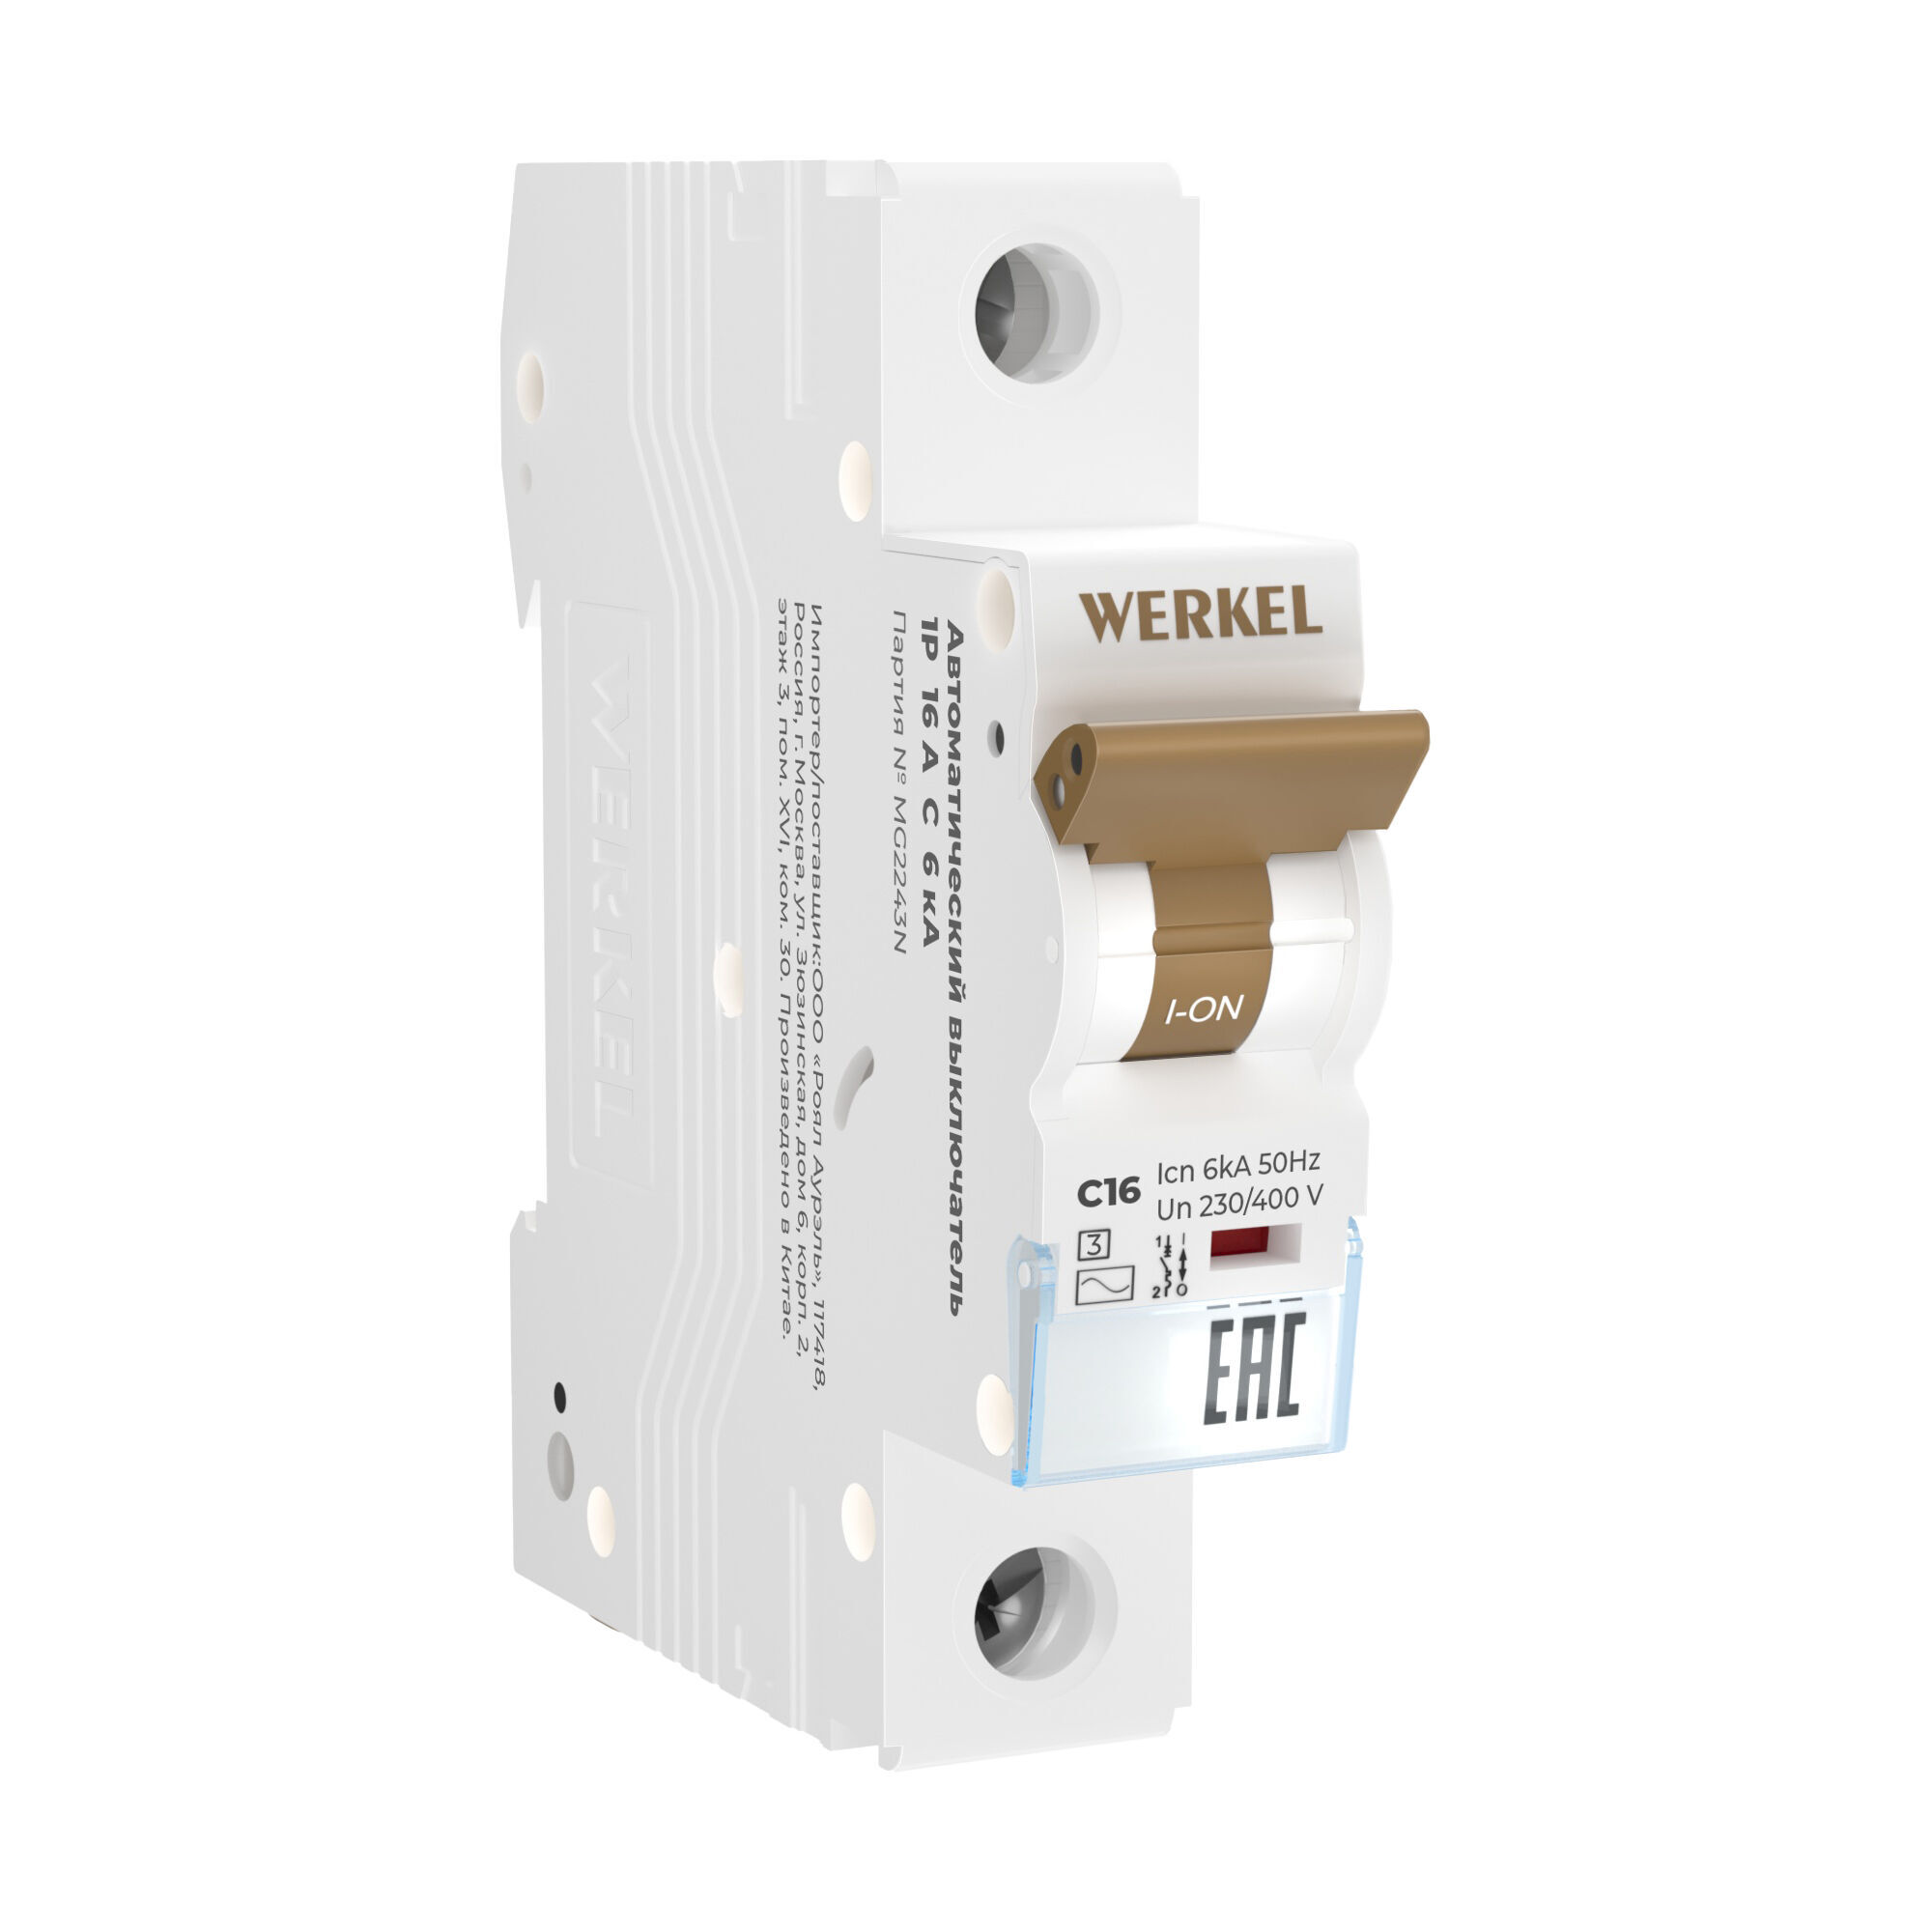 Автоматический выключатель 1P 16 A C 6 кА Werkel W901P166 (a062457)